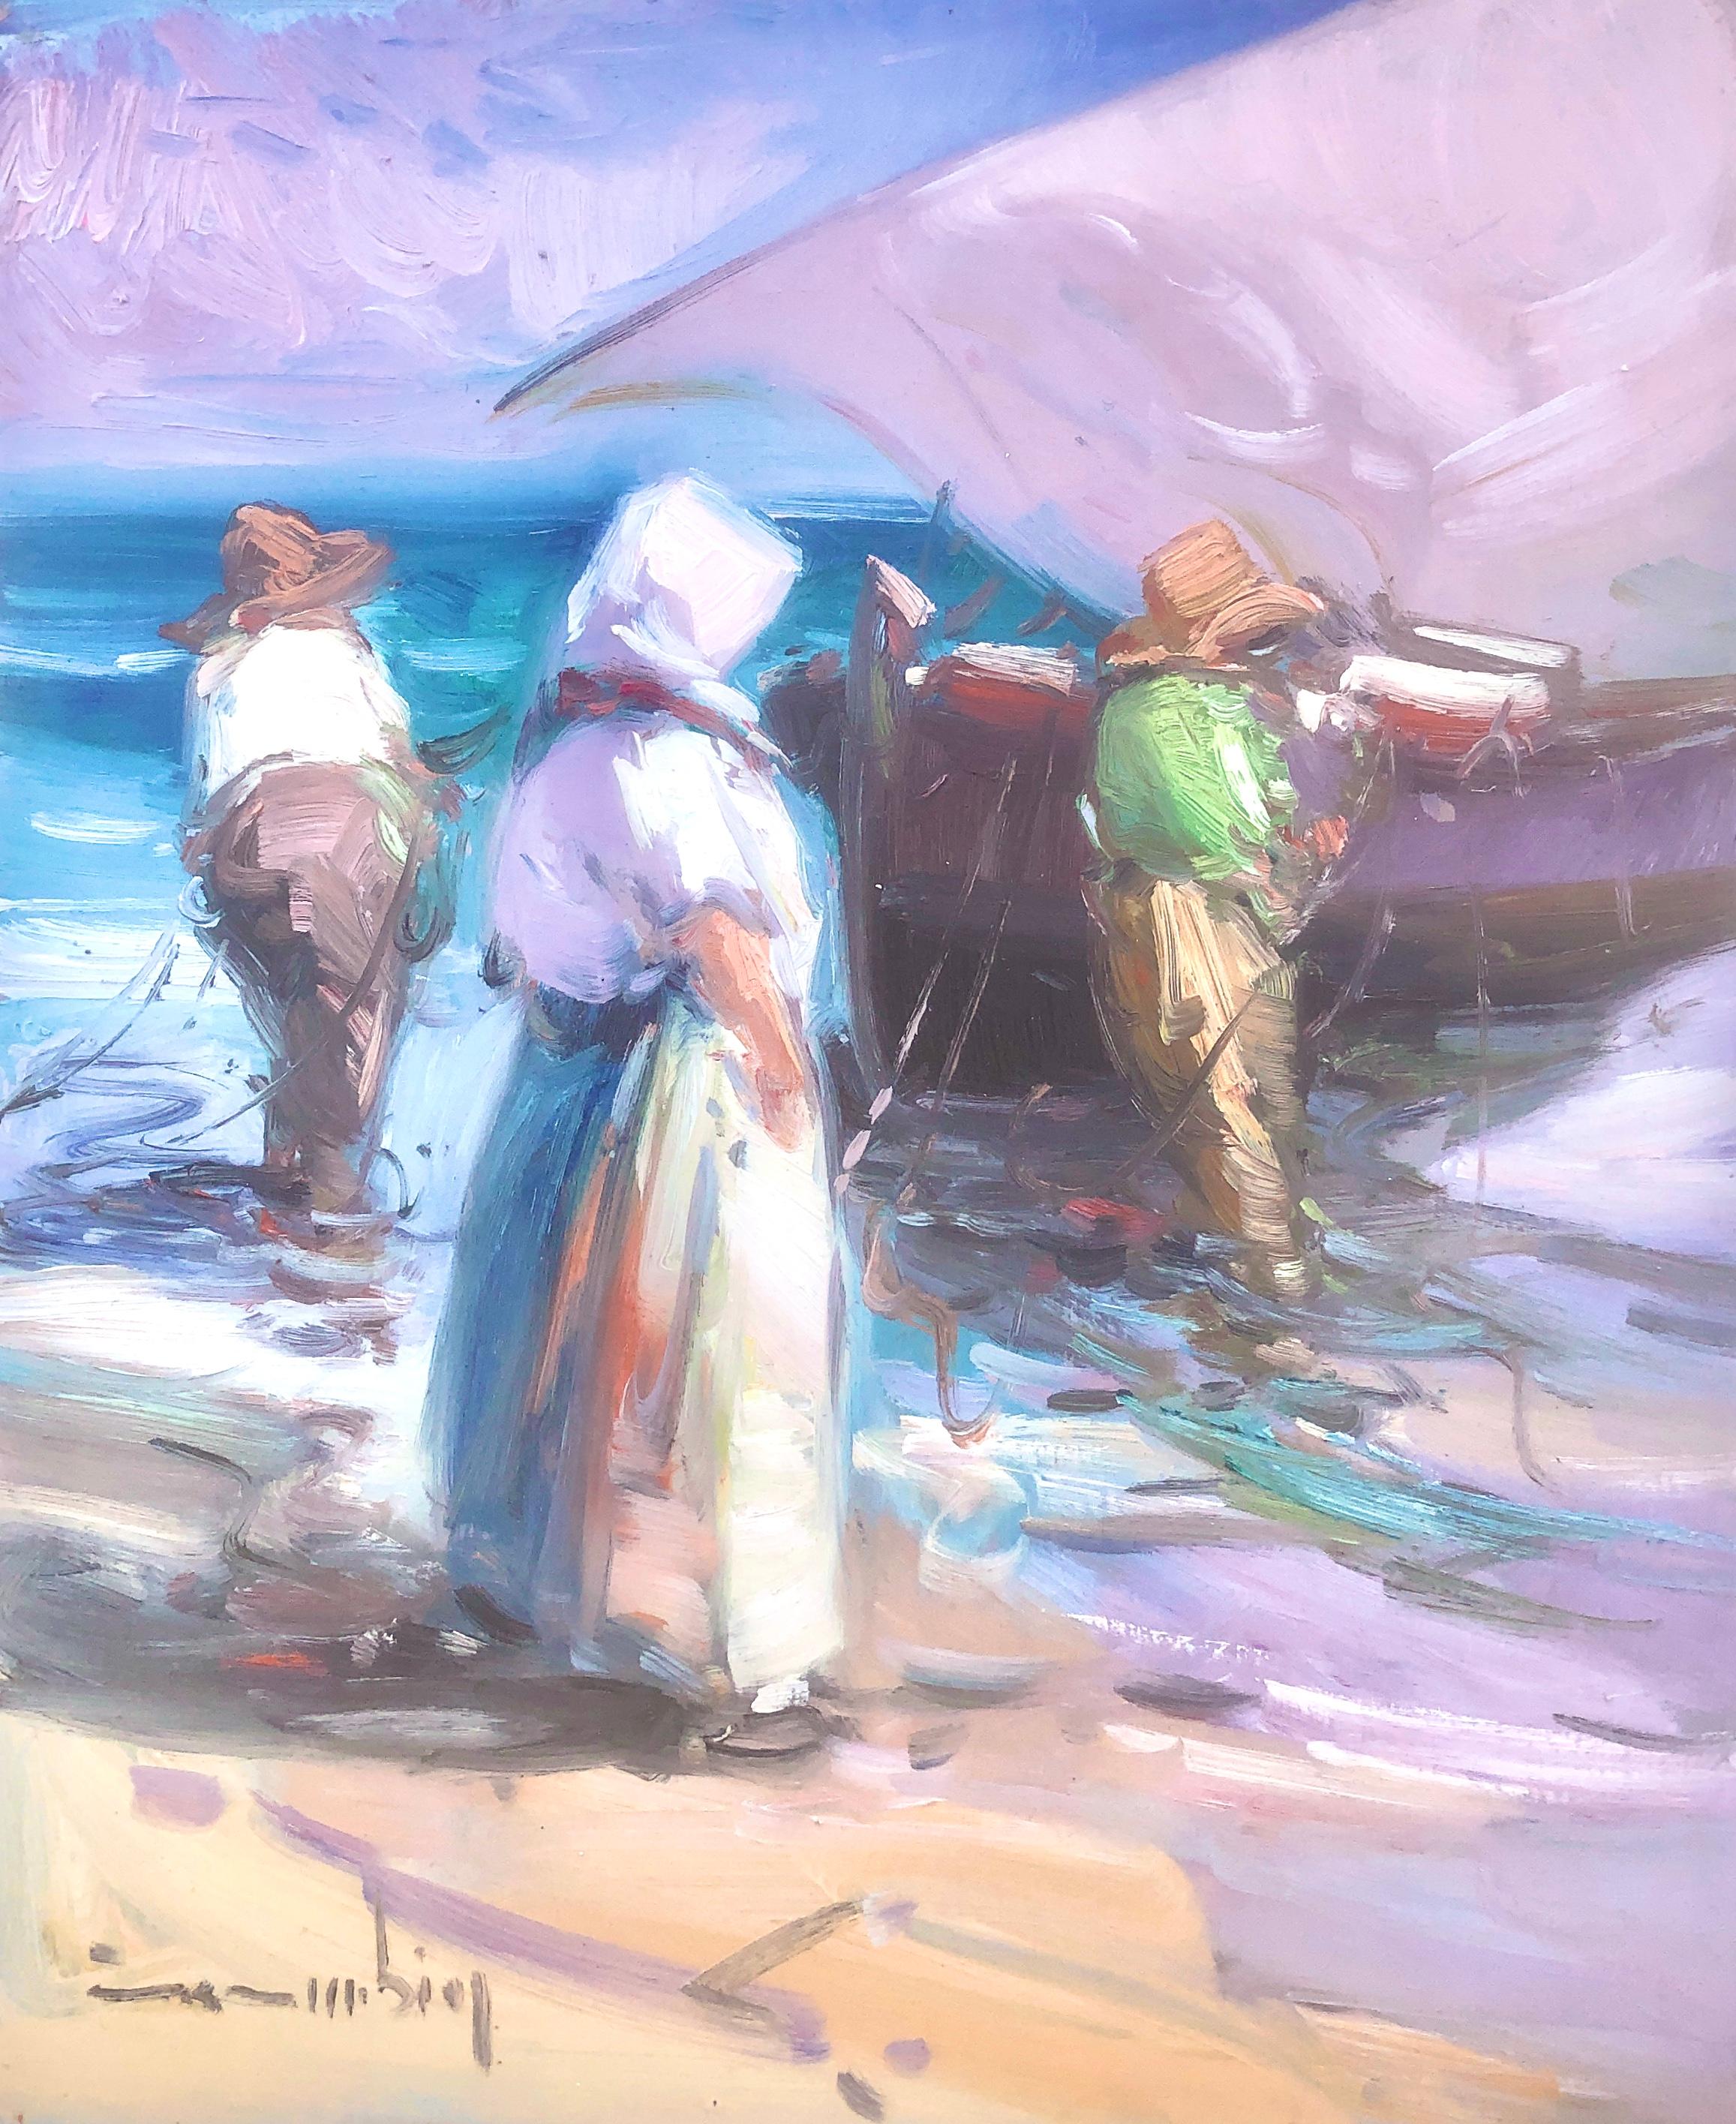 Landscape Painting Gabriel Casarrubios - Peinture à l'huile sur panneau - Espagne - pêcheurs espagnols sur la plage